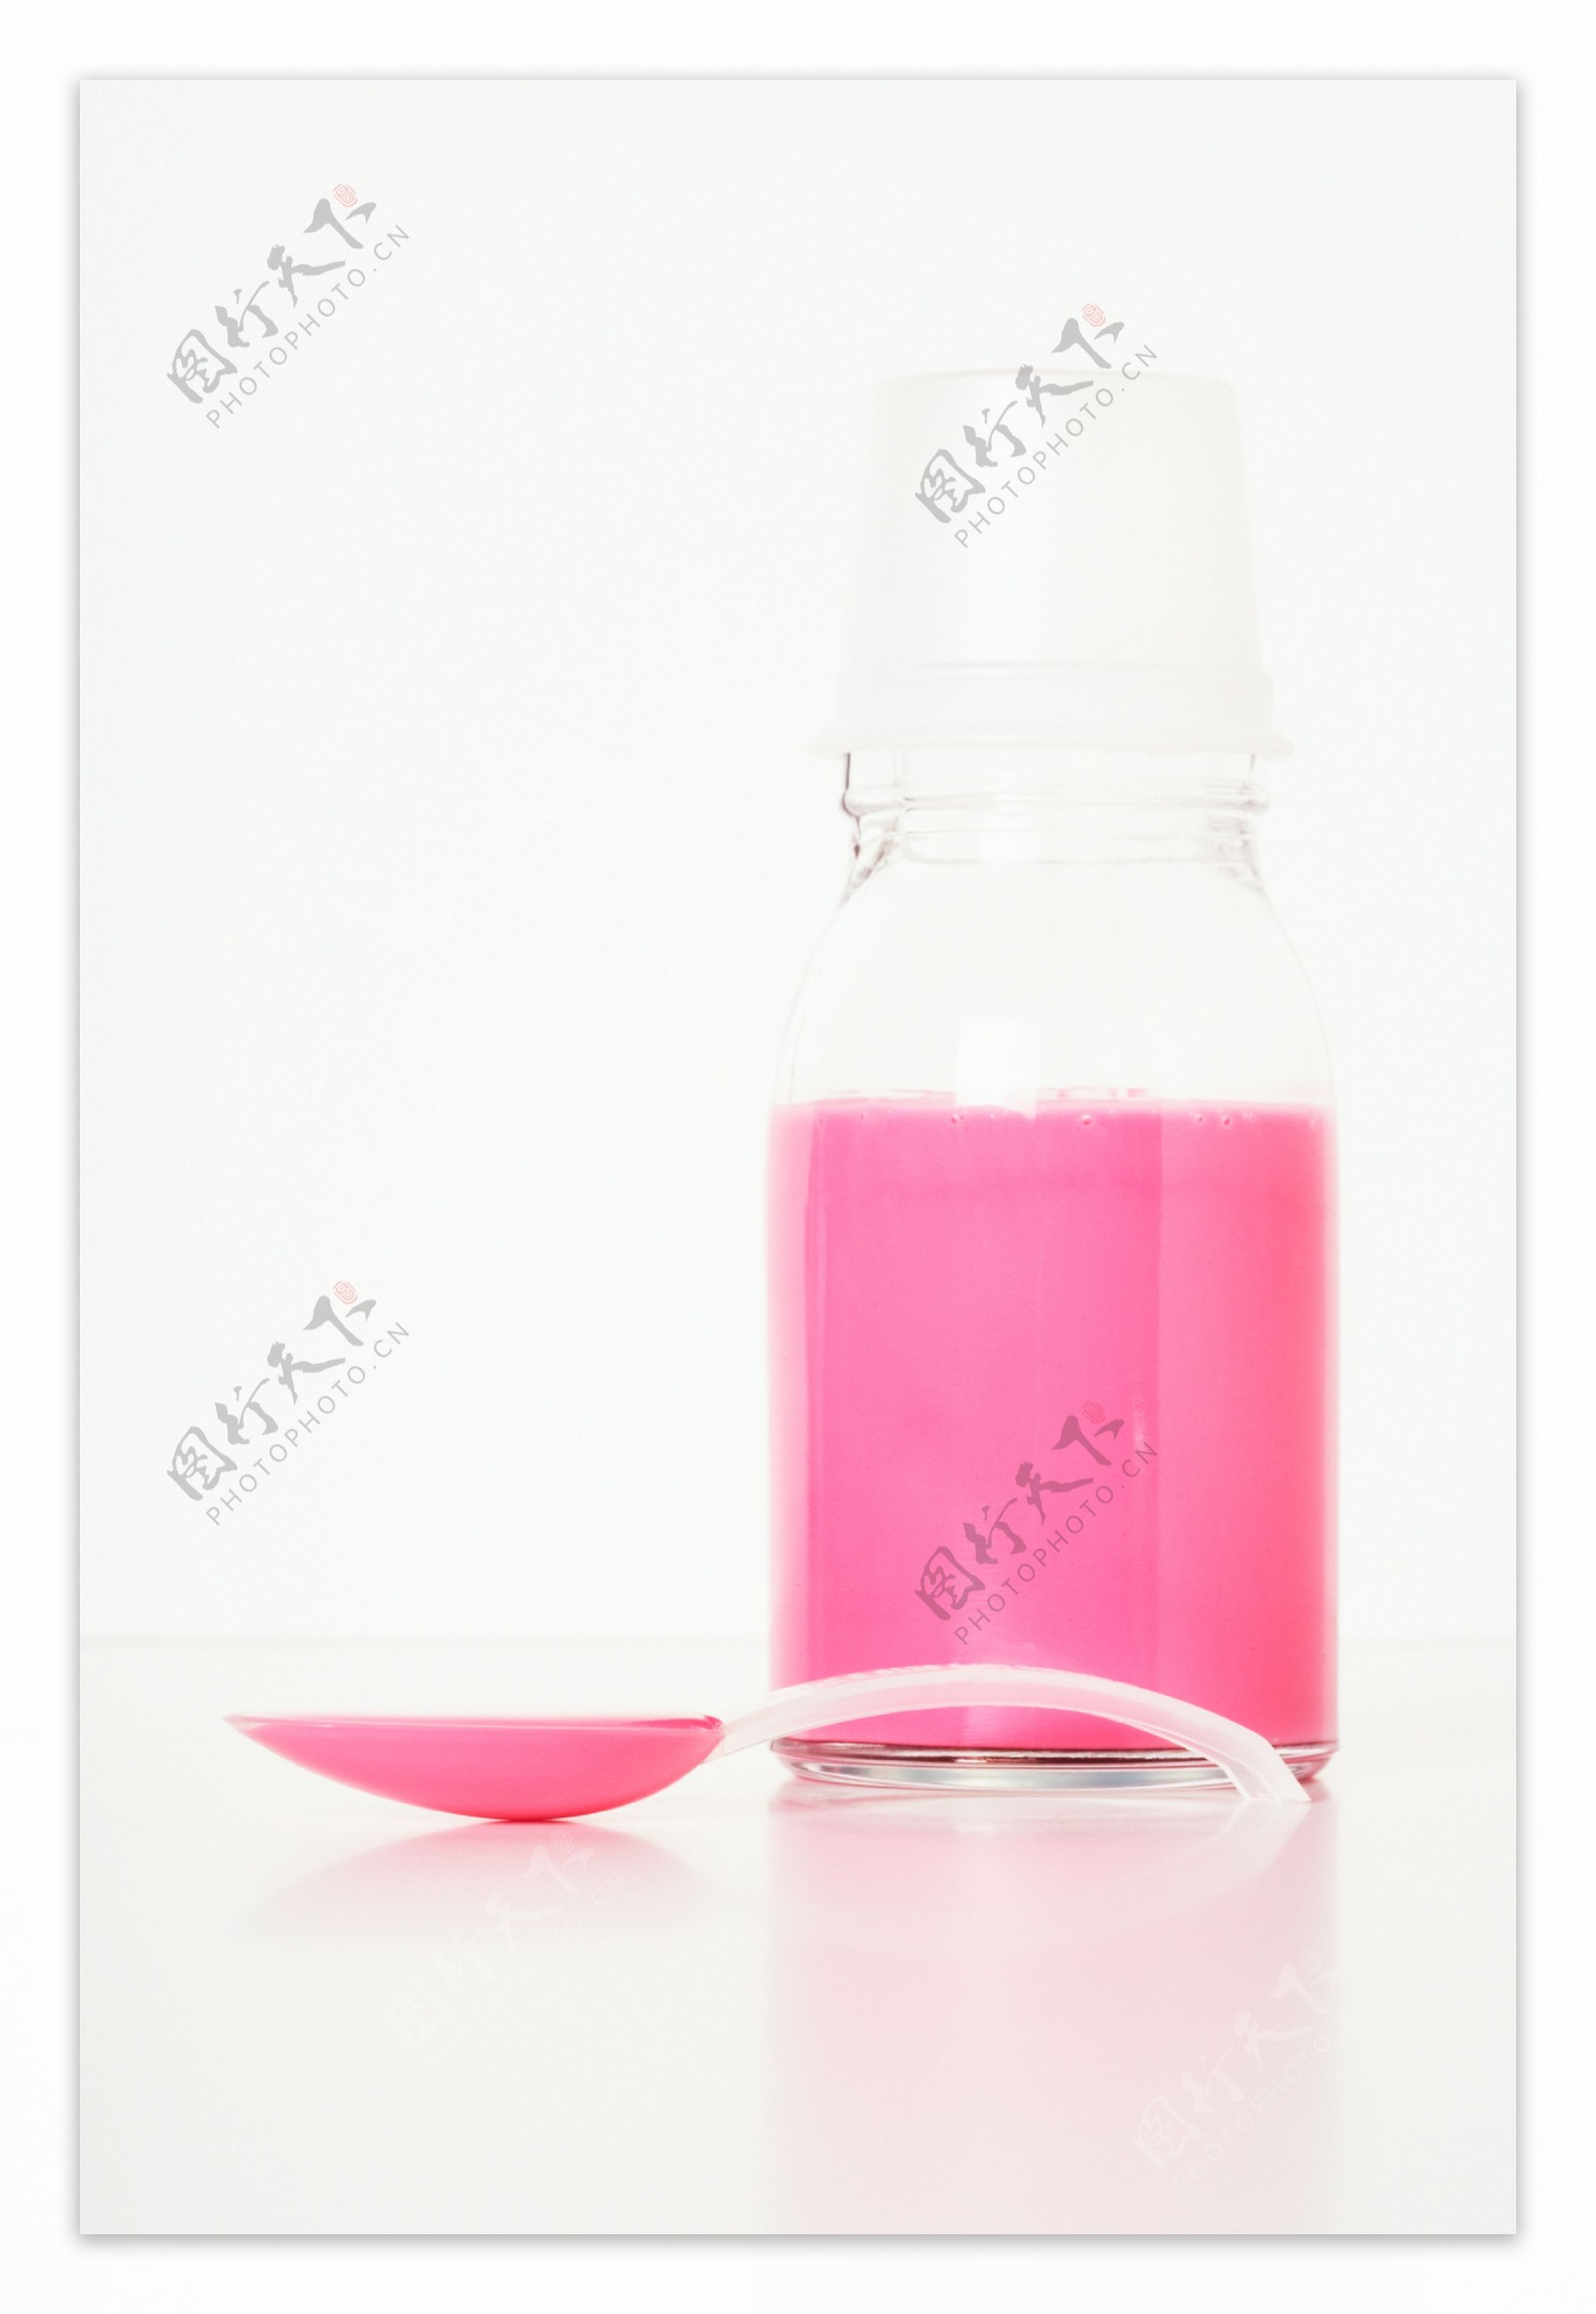 瓶子内的粉色试剂图片